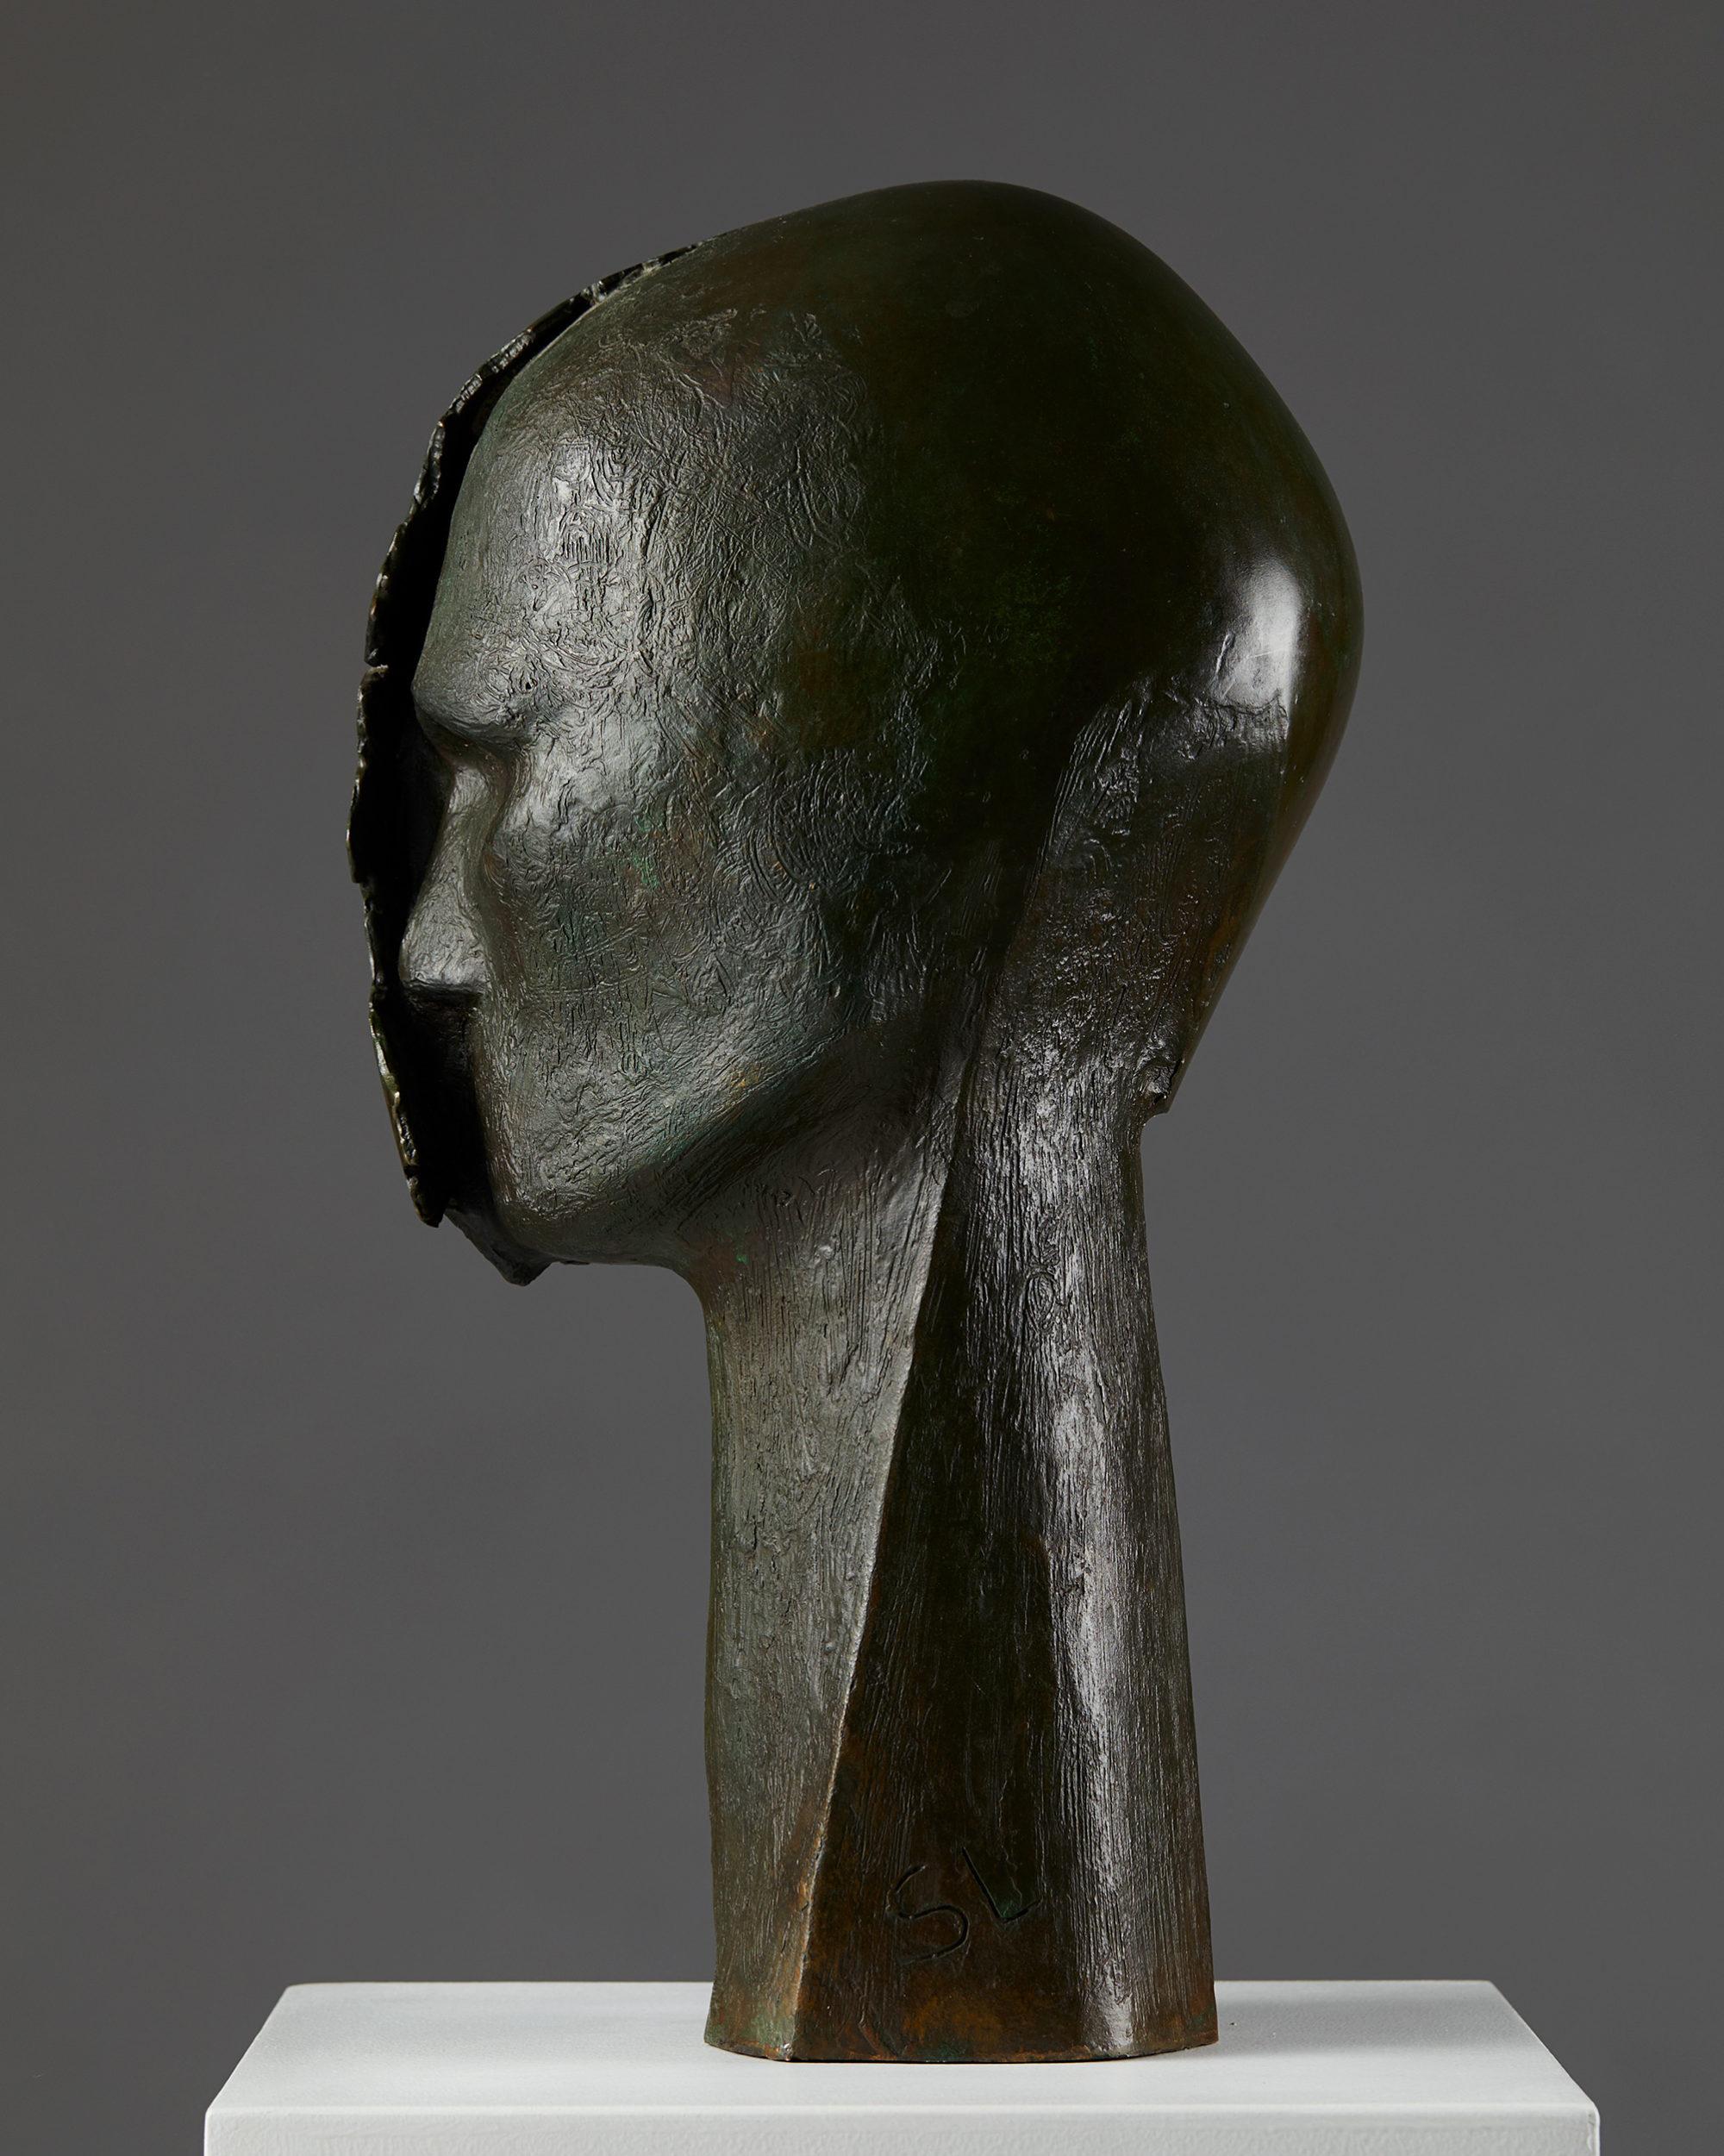 Bust sculpture designed by Steffen Lüttge, Denmark, 1960s.
Patinated Bronze

Signed: SL

Measures: H: 50 cm/ 1' 8 1/4